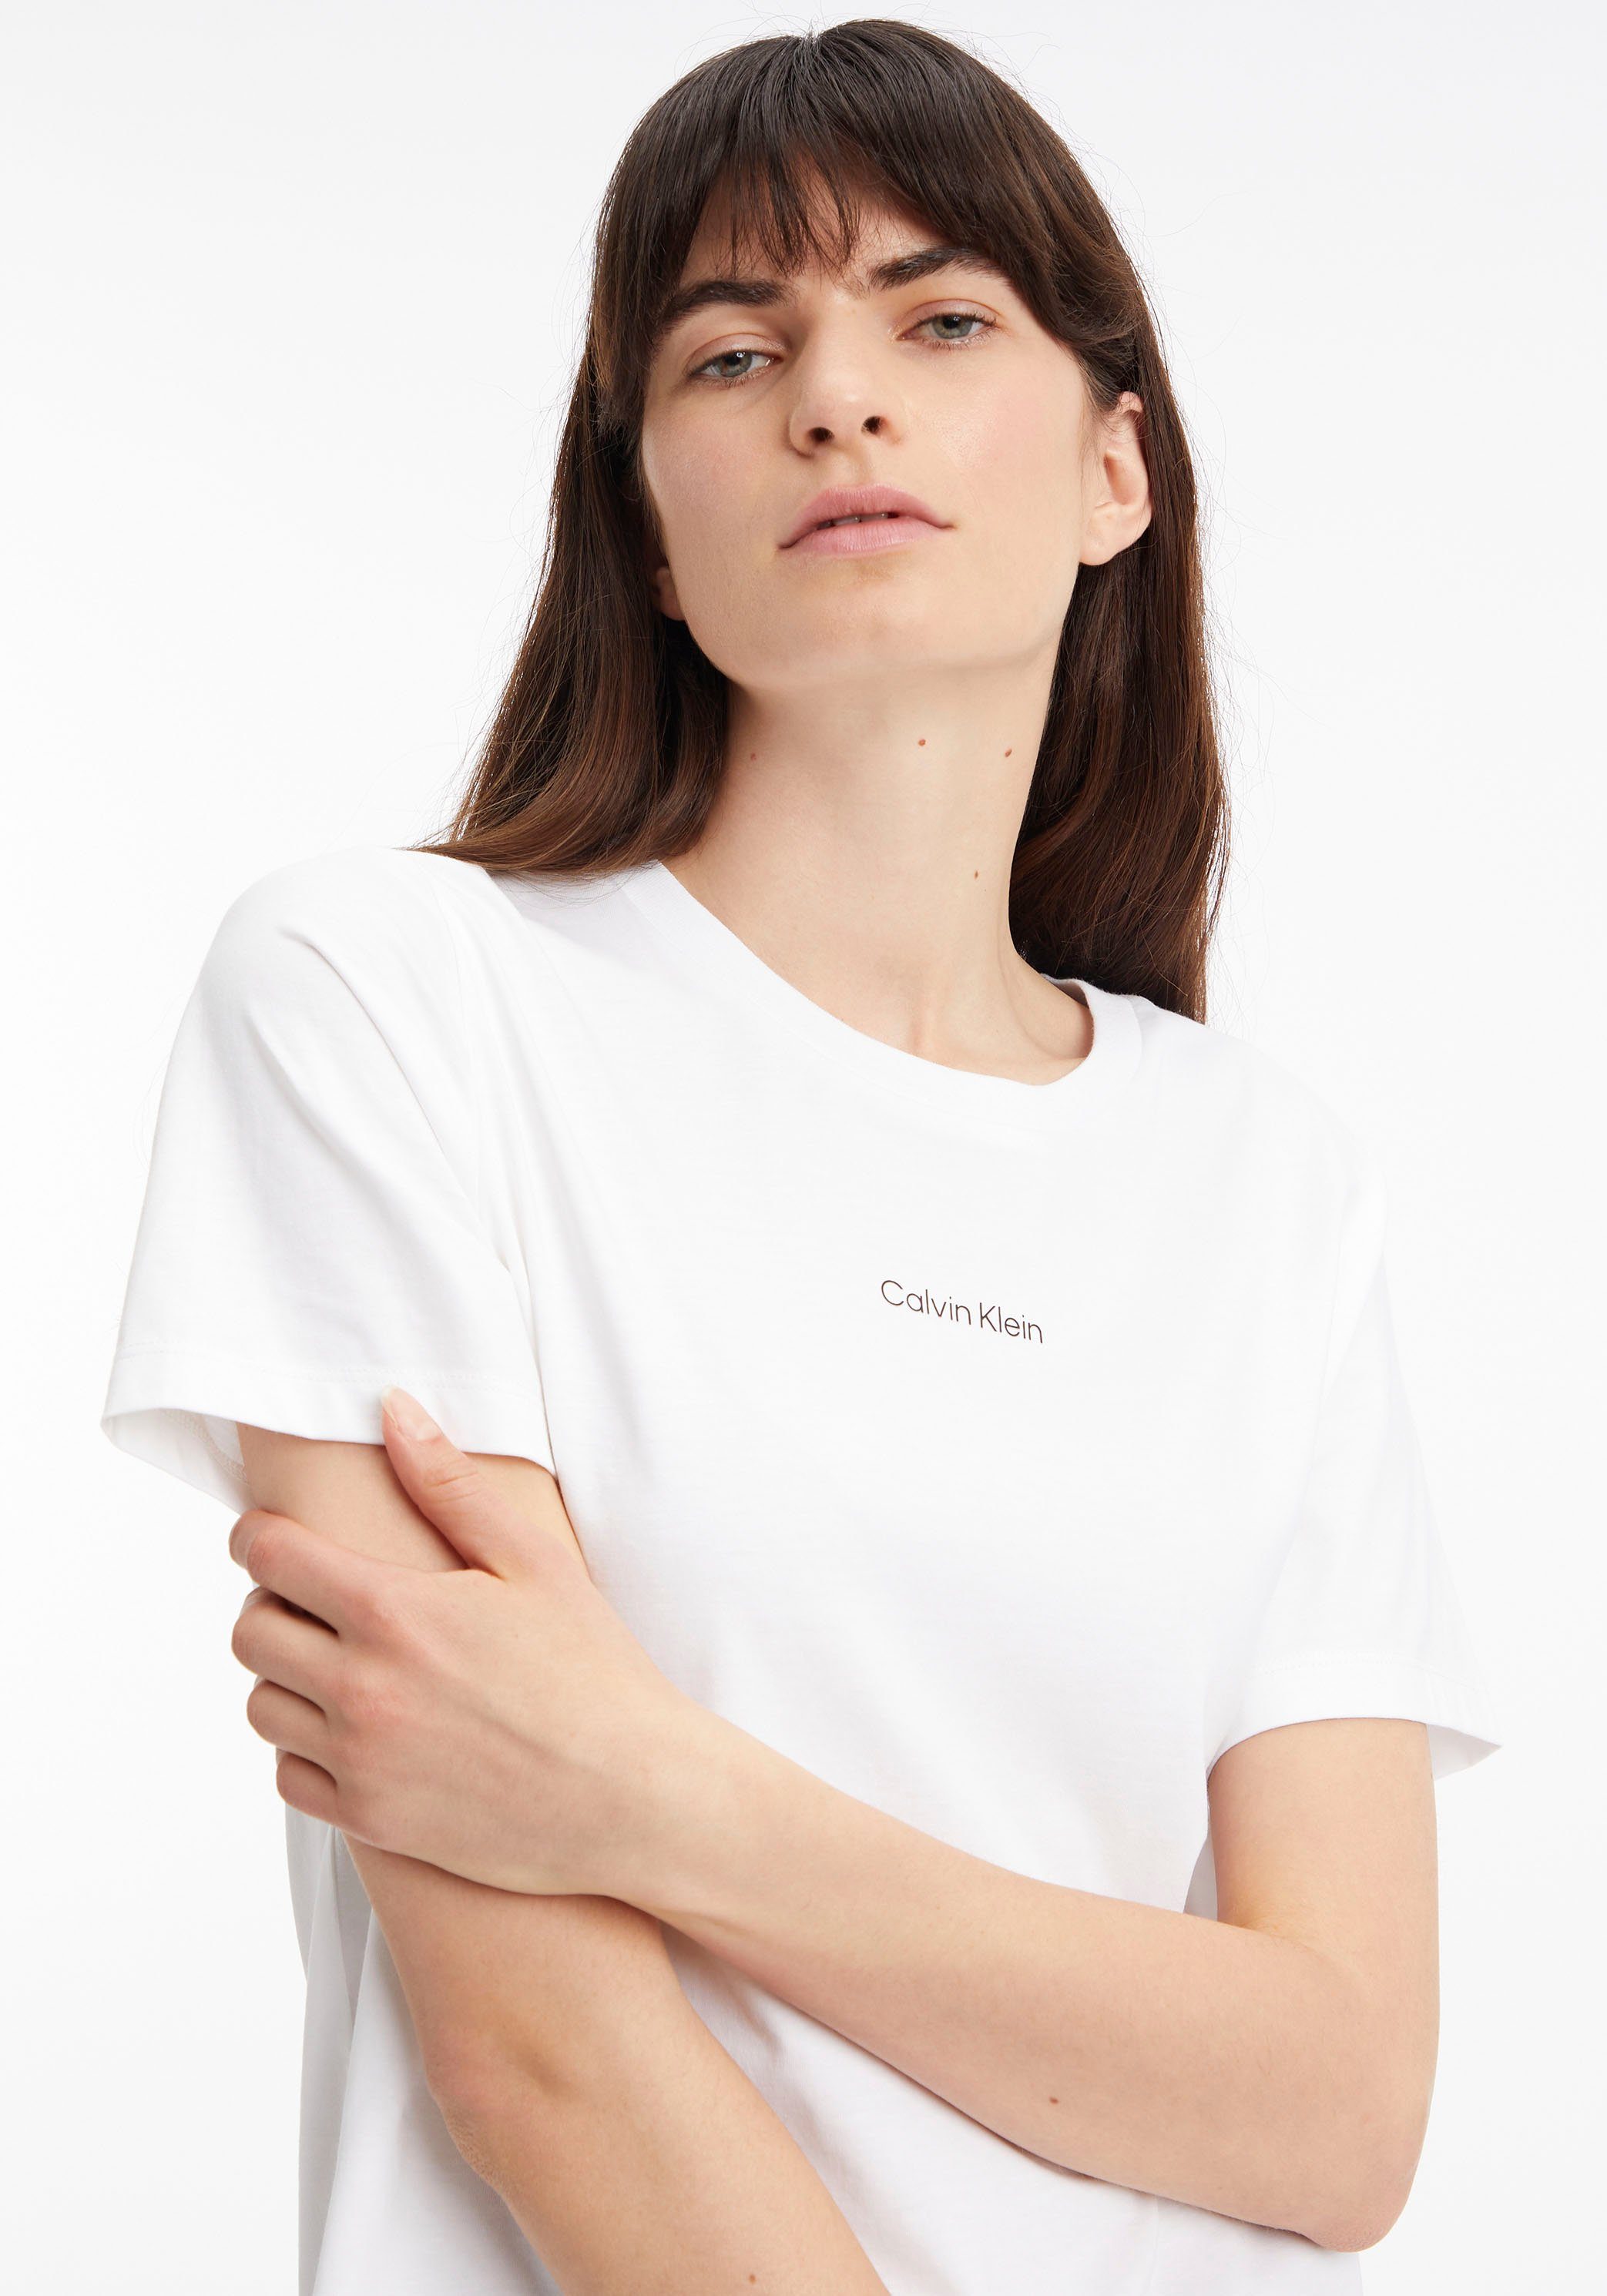 reiner Klein MICRO aus Baumwolle Bright-White Calvin T-SHIRT LOGO T-Shirt